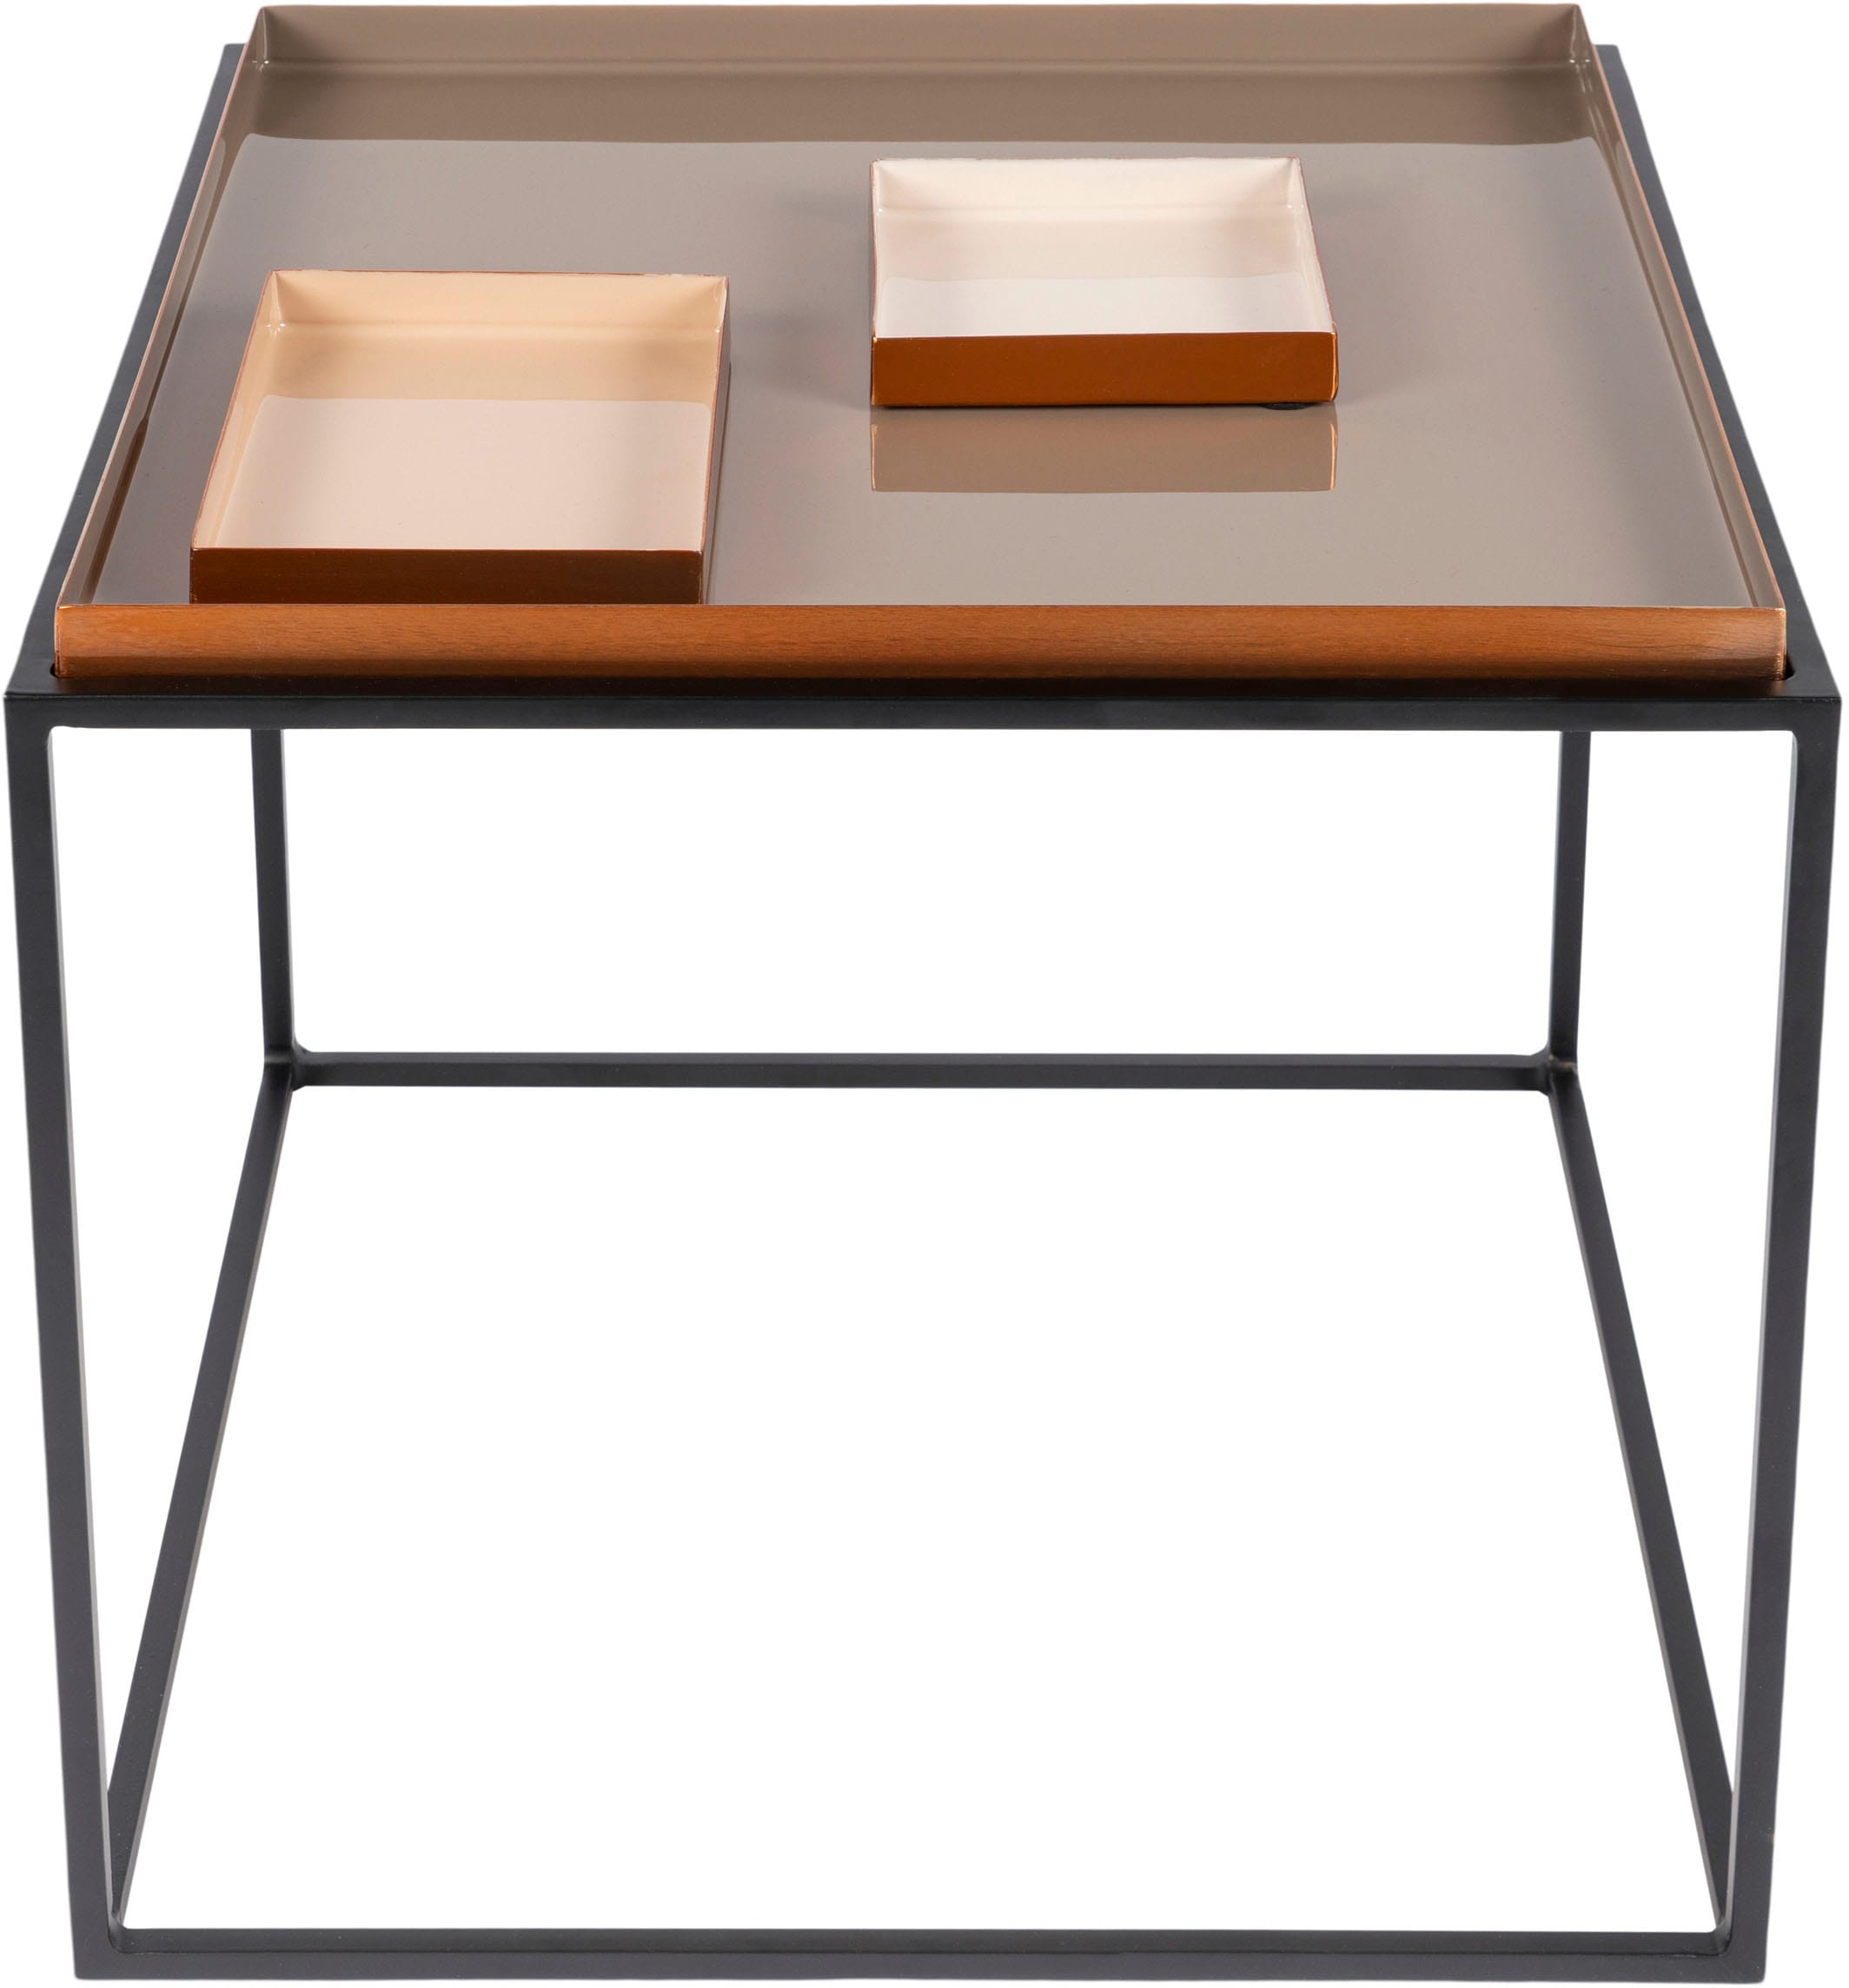 Kayoom Beistelltisch »Beistelltisch Famosa«, Bunter Tisch, Schalenmaße: 11 x 11 x 2 / 15,8 x 11 x 2 cm